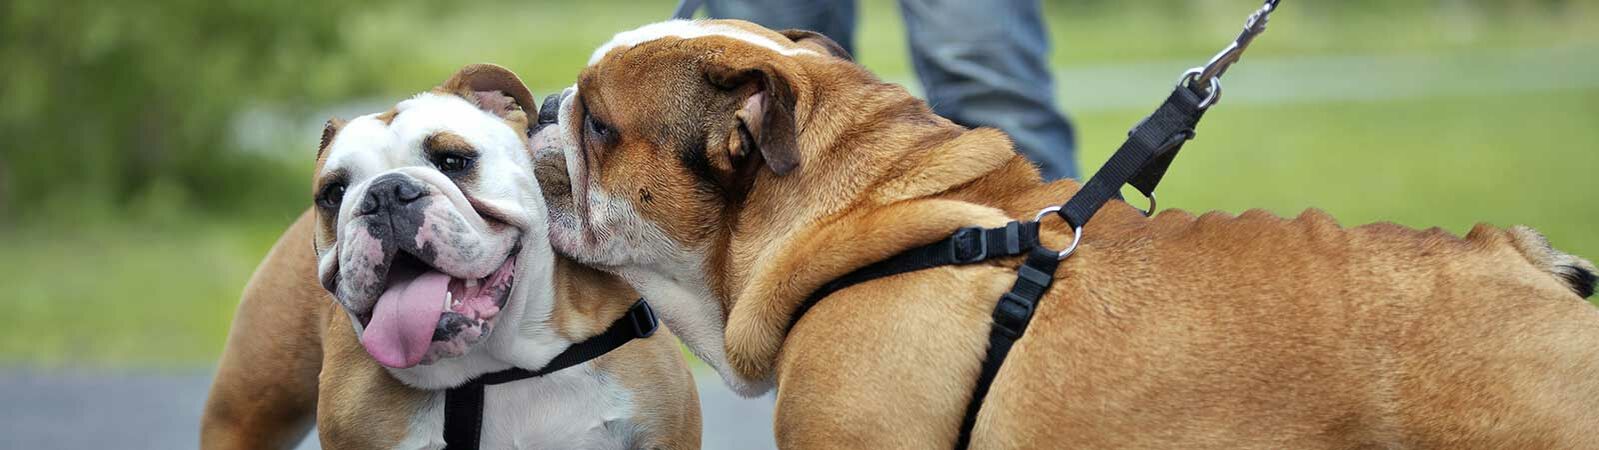 Zwei angeleinte Bulldoggen treffen sich auf einer Asphaltstraße und beschnüffeln sich.